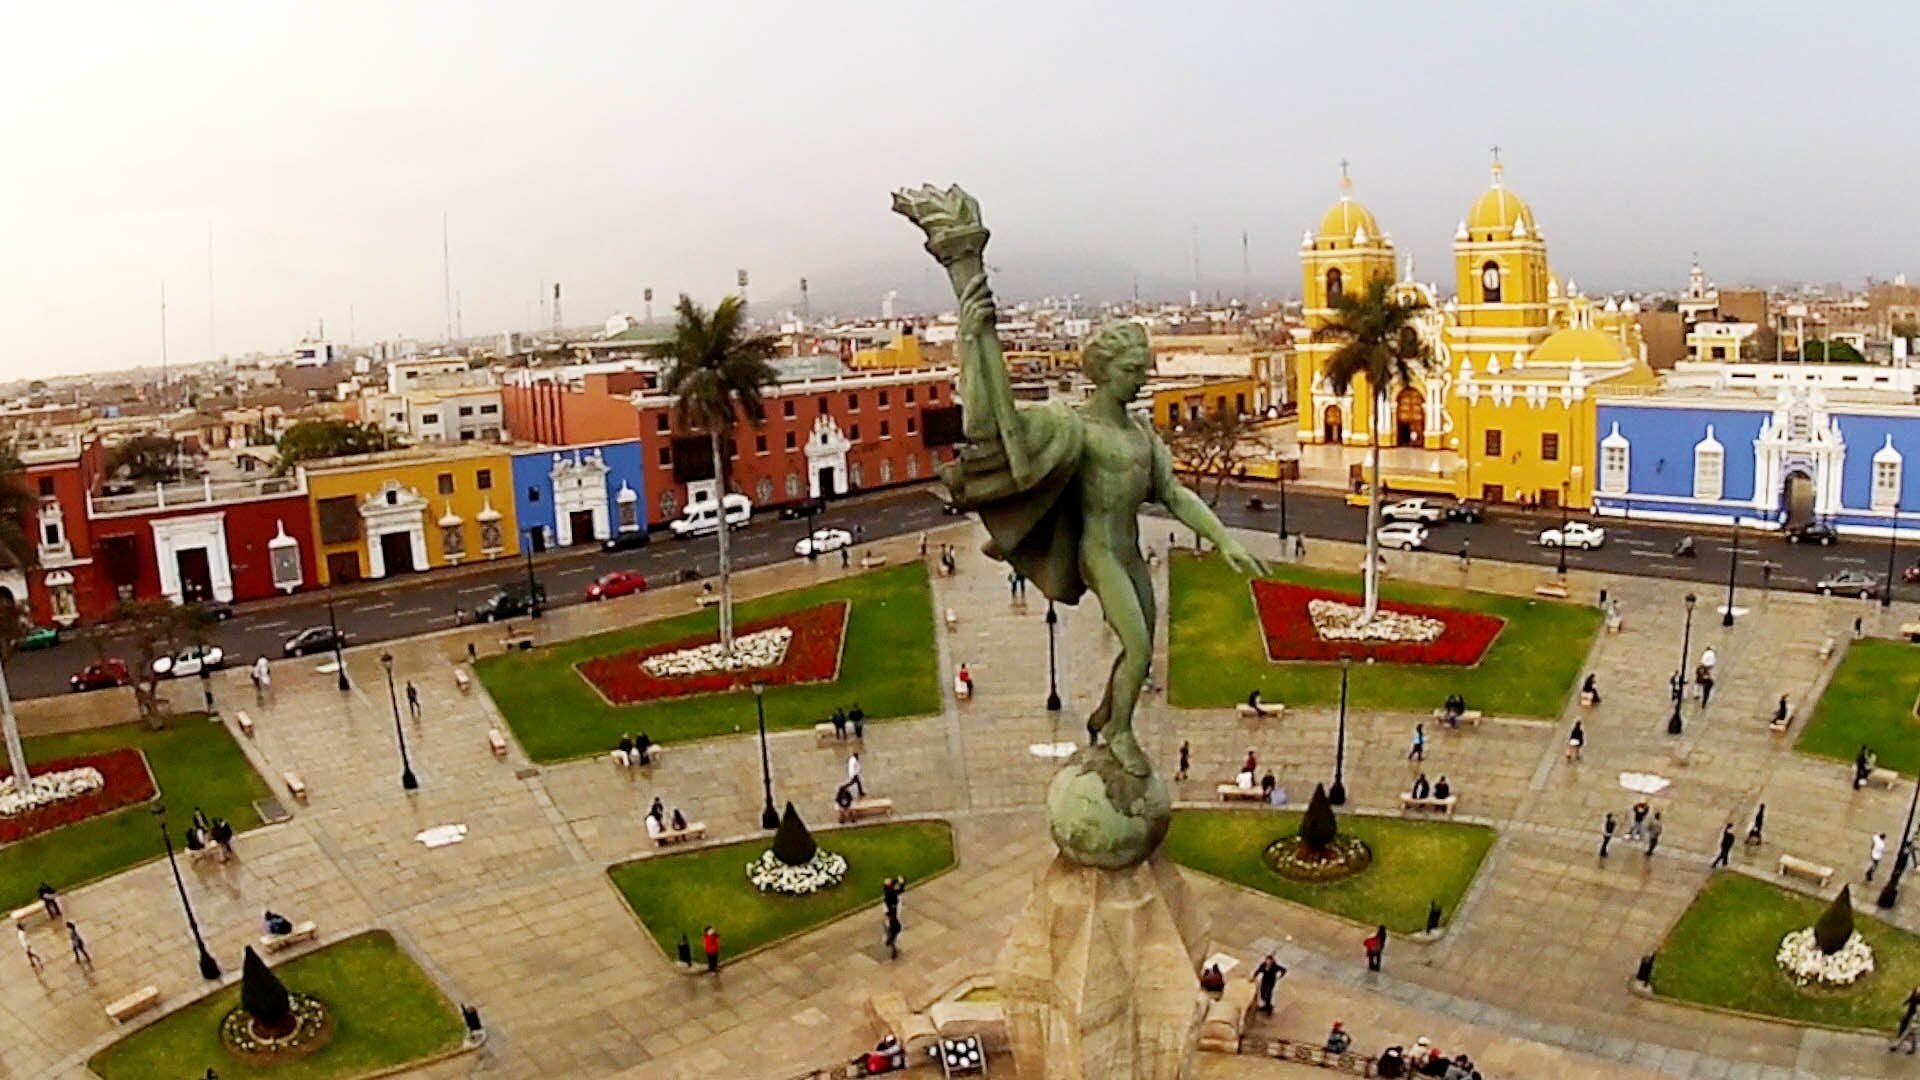 Трухильо Перу. Плаза де Армас парк. Лима столица Перу. Исторический центр Лимы.